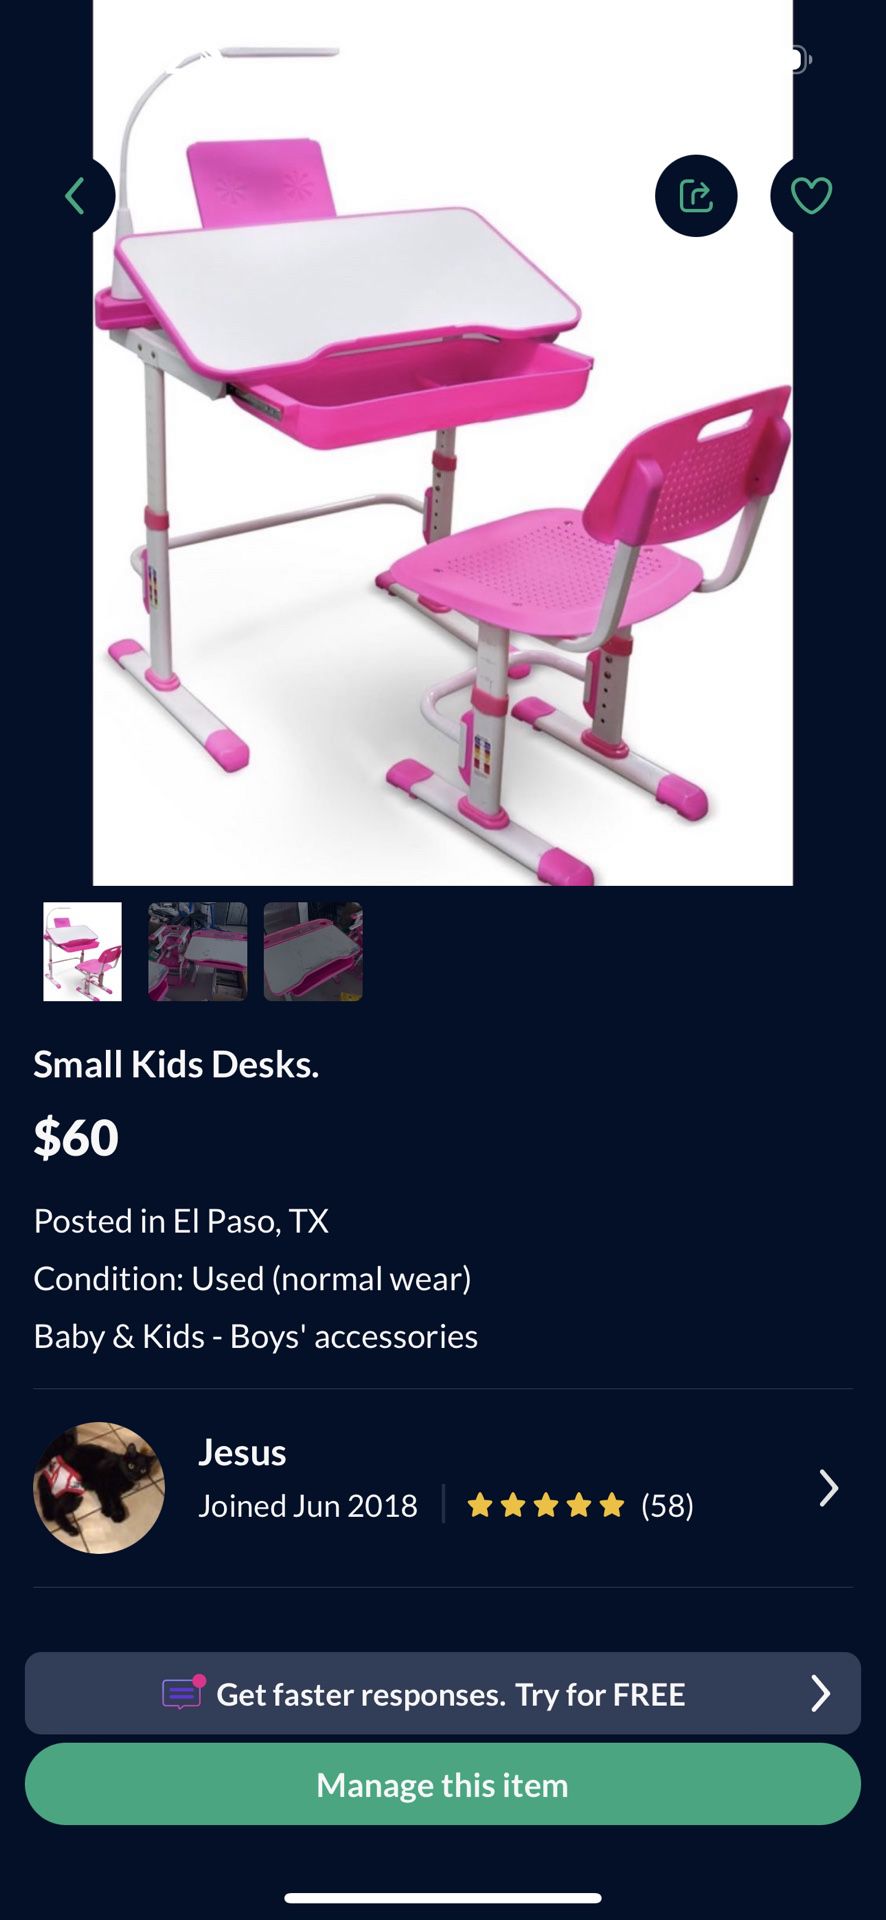 Small Kids Desks. 